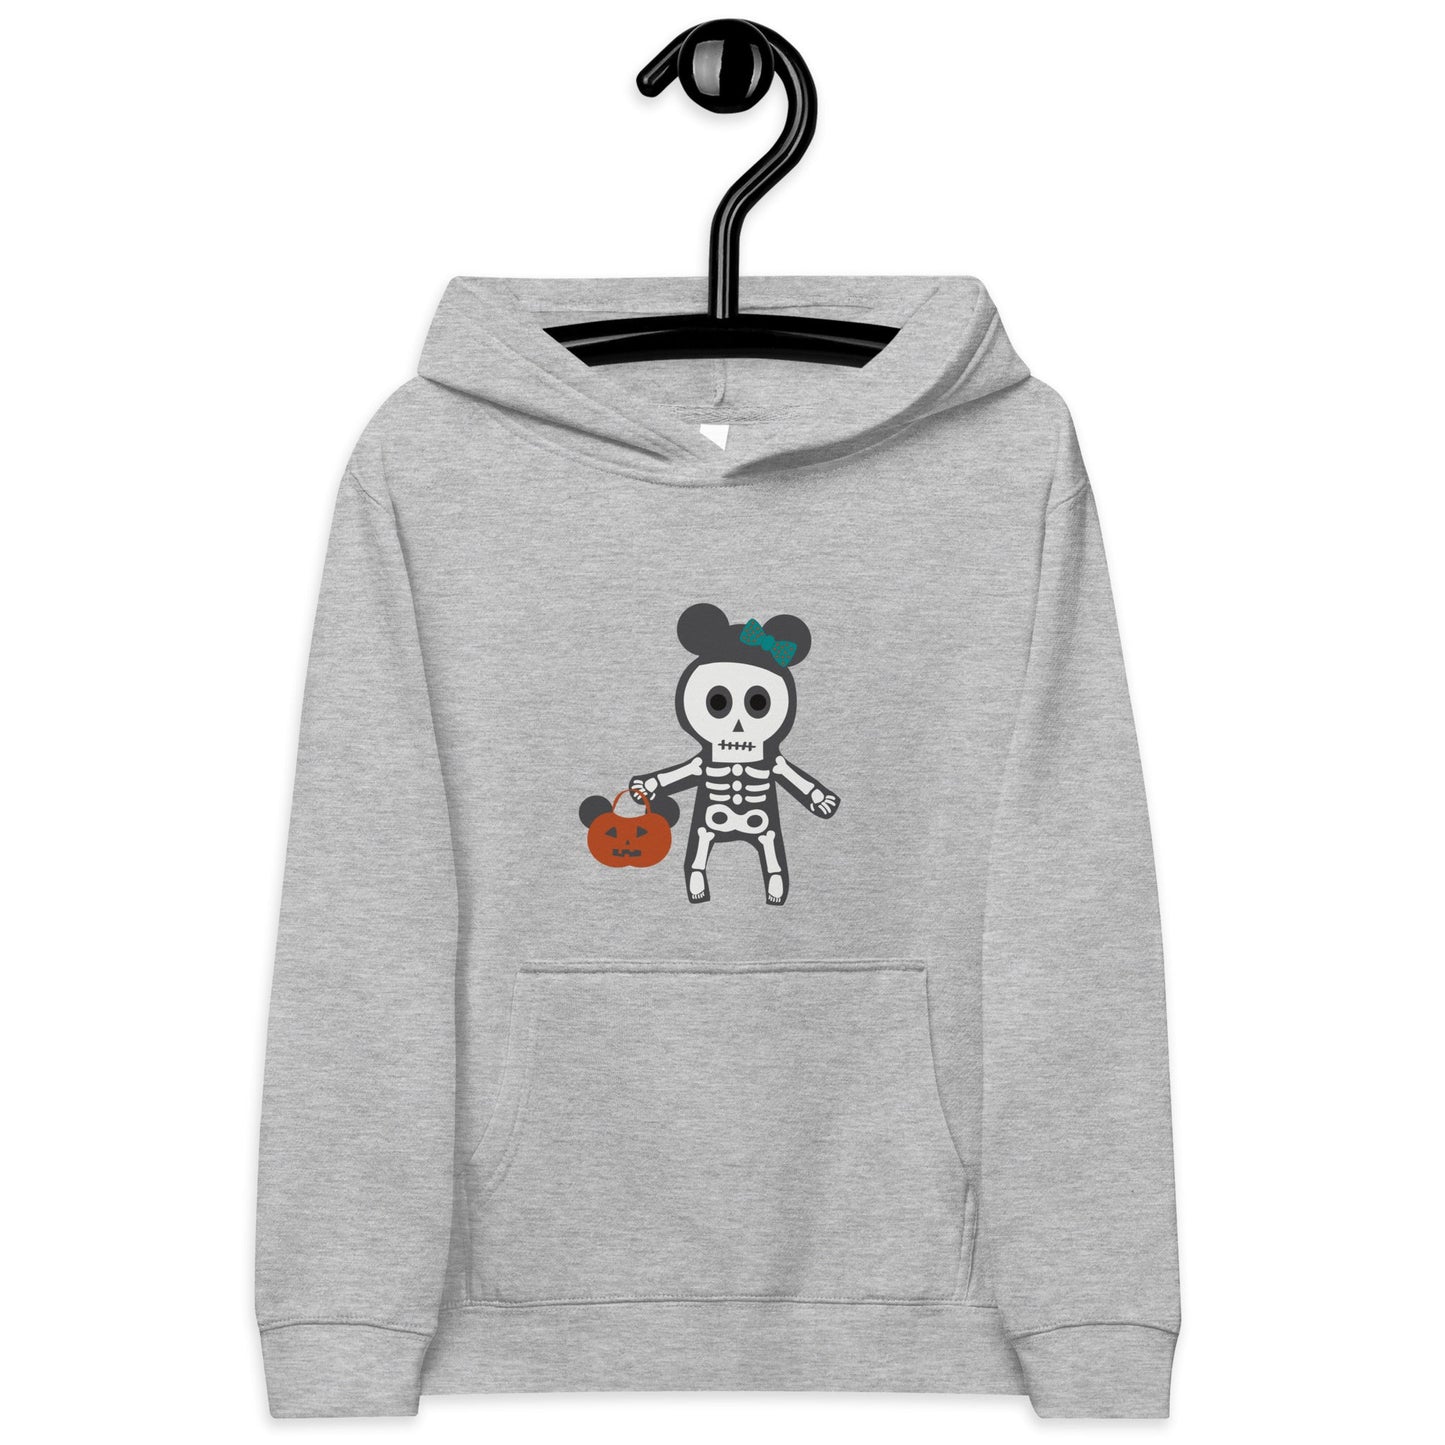 Spooky Silly Skeleton Kids fleece hoodie cosplaydisney halloweendisney halloween sweatshirt#tag4##tag5##tag6#